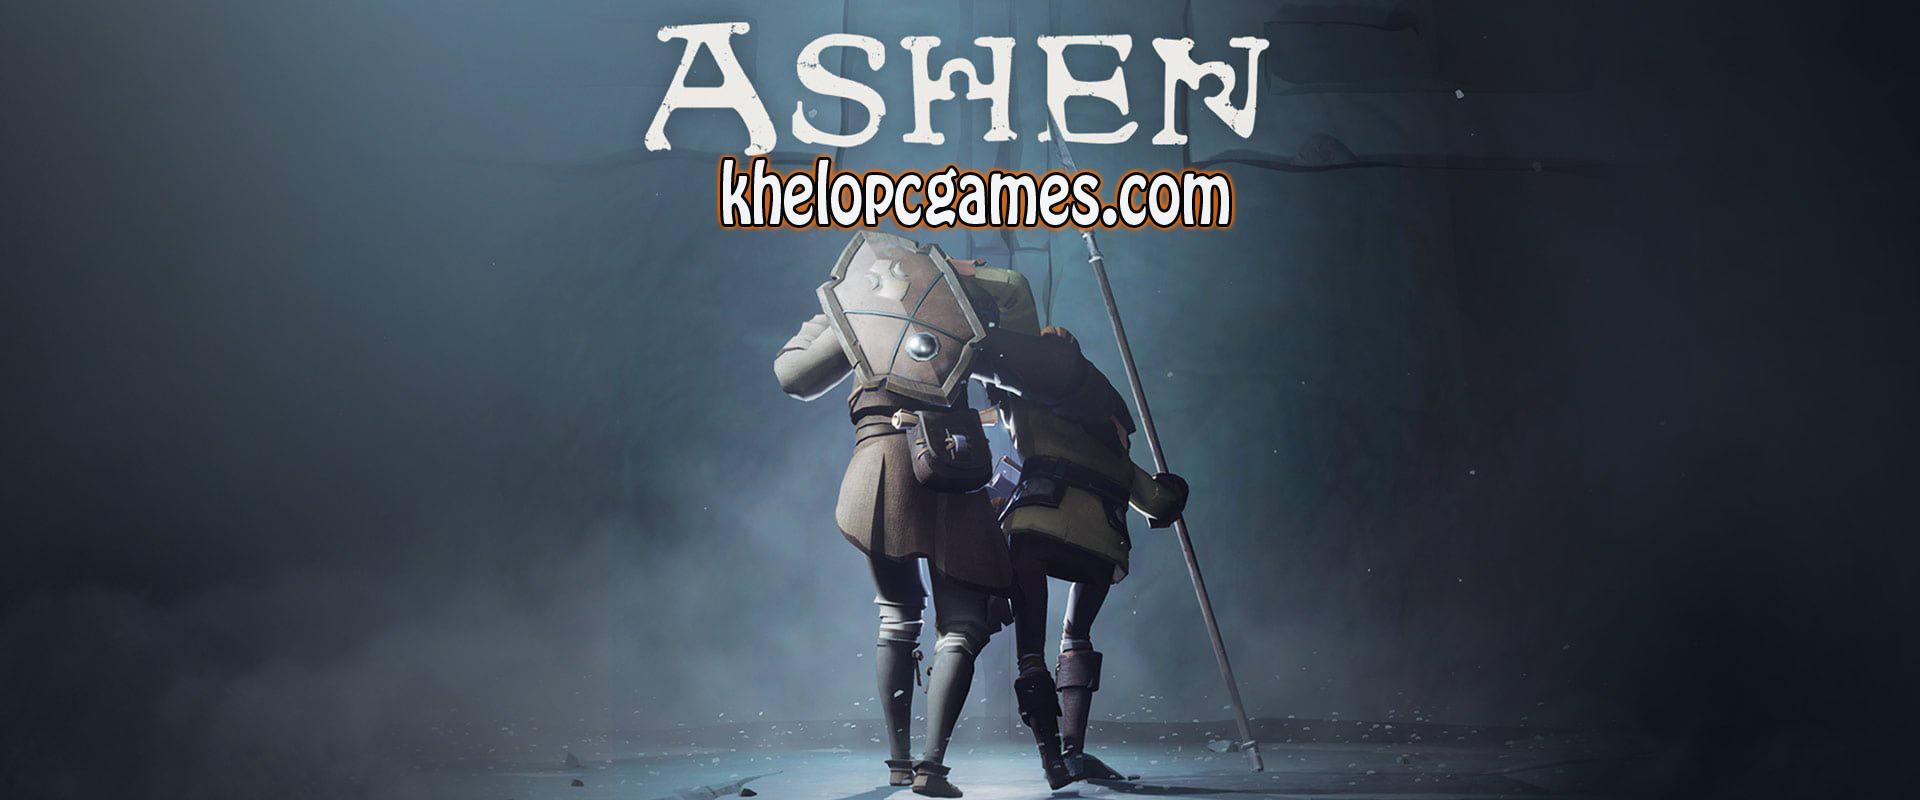 download free steam ashen